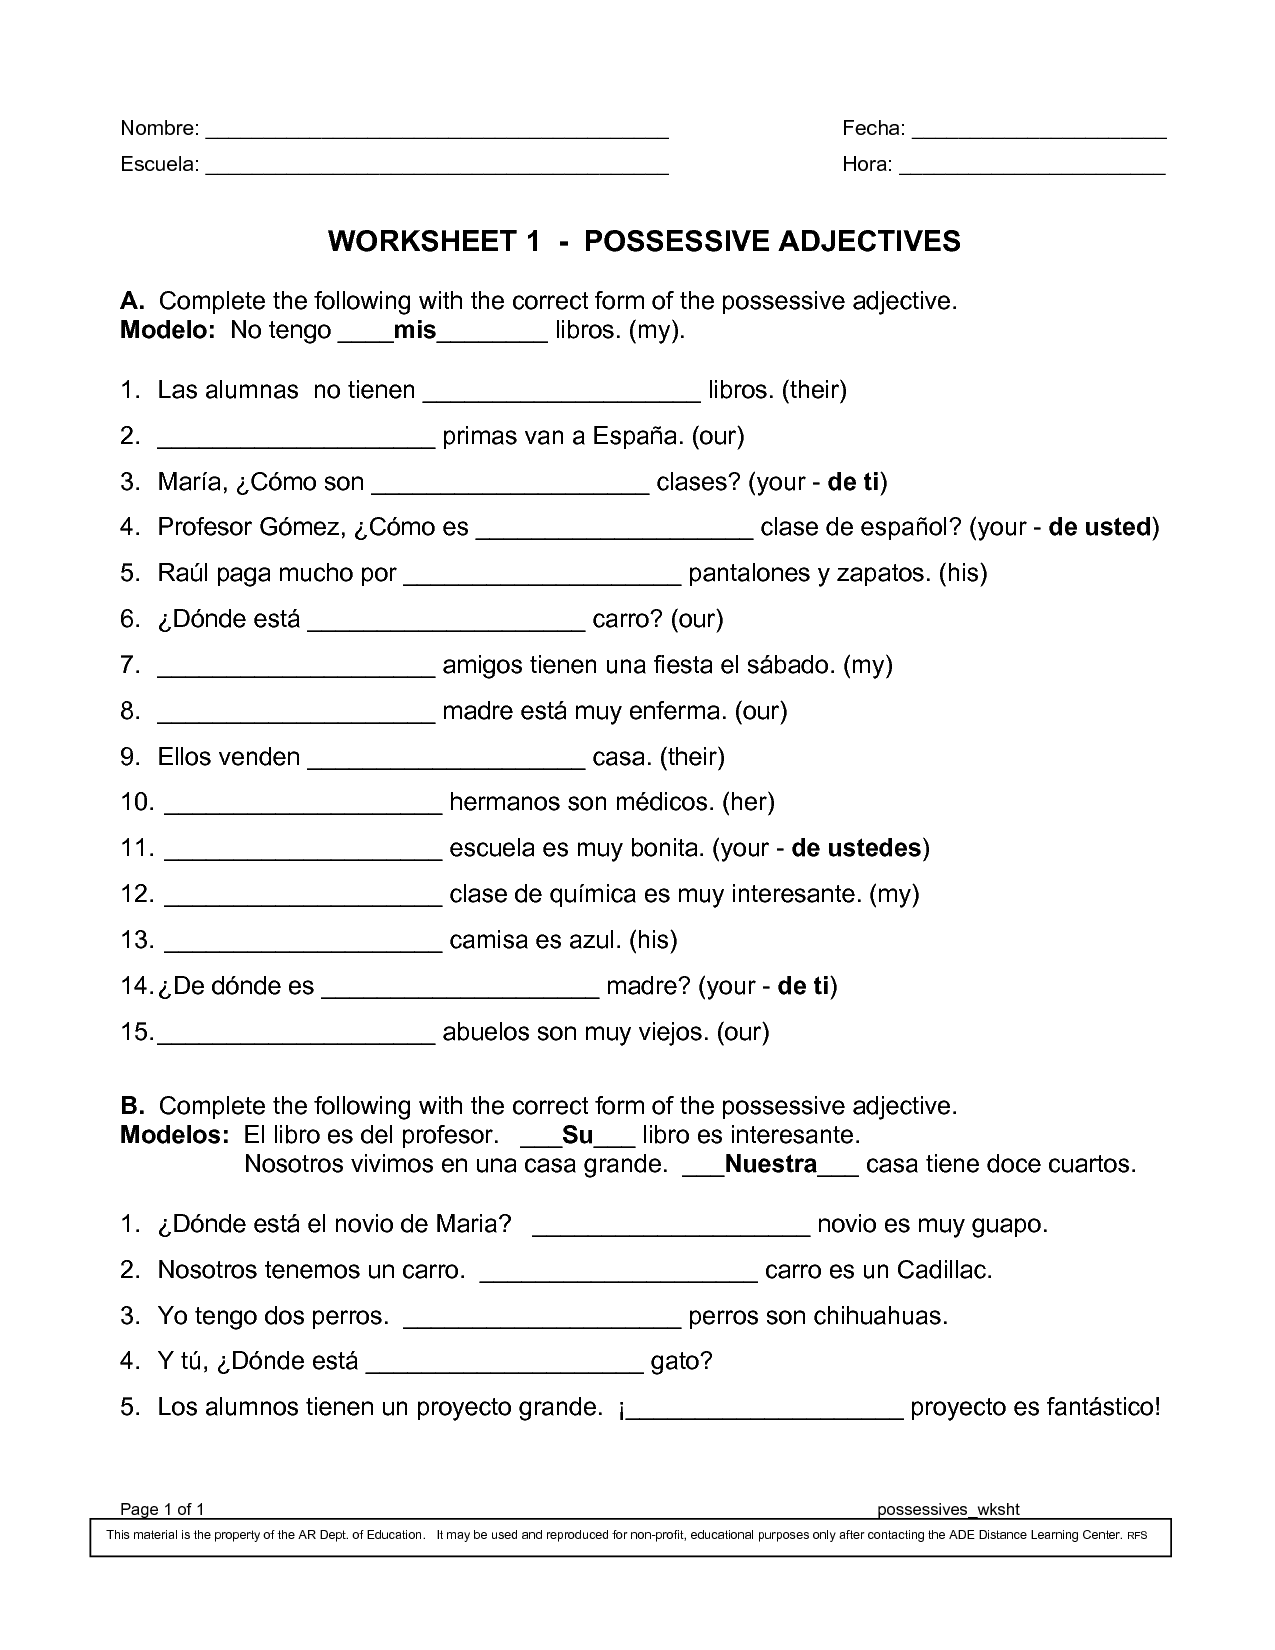 Possessive Pronouns In Spanish Worksheet